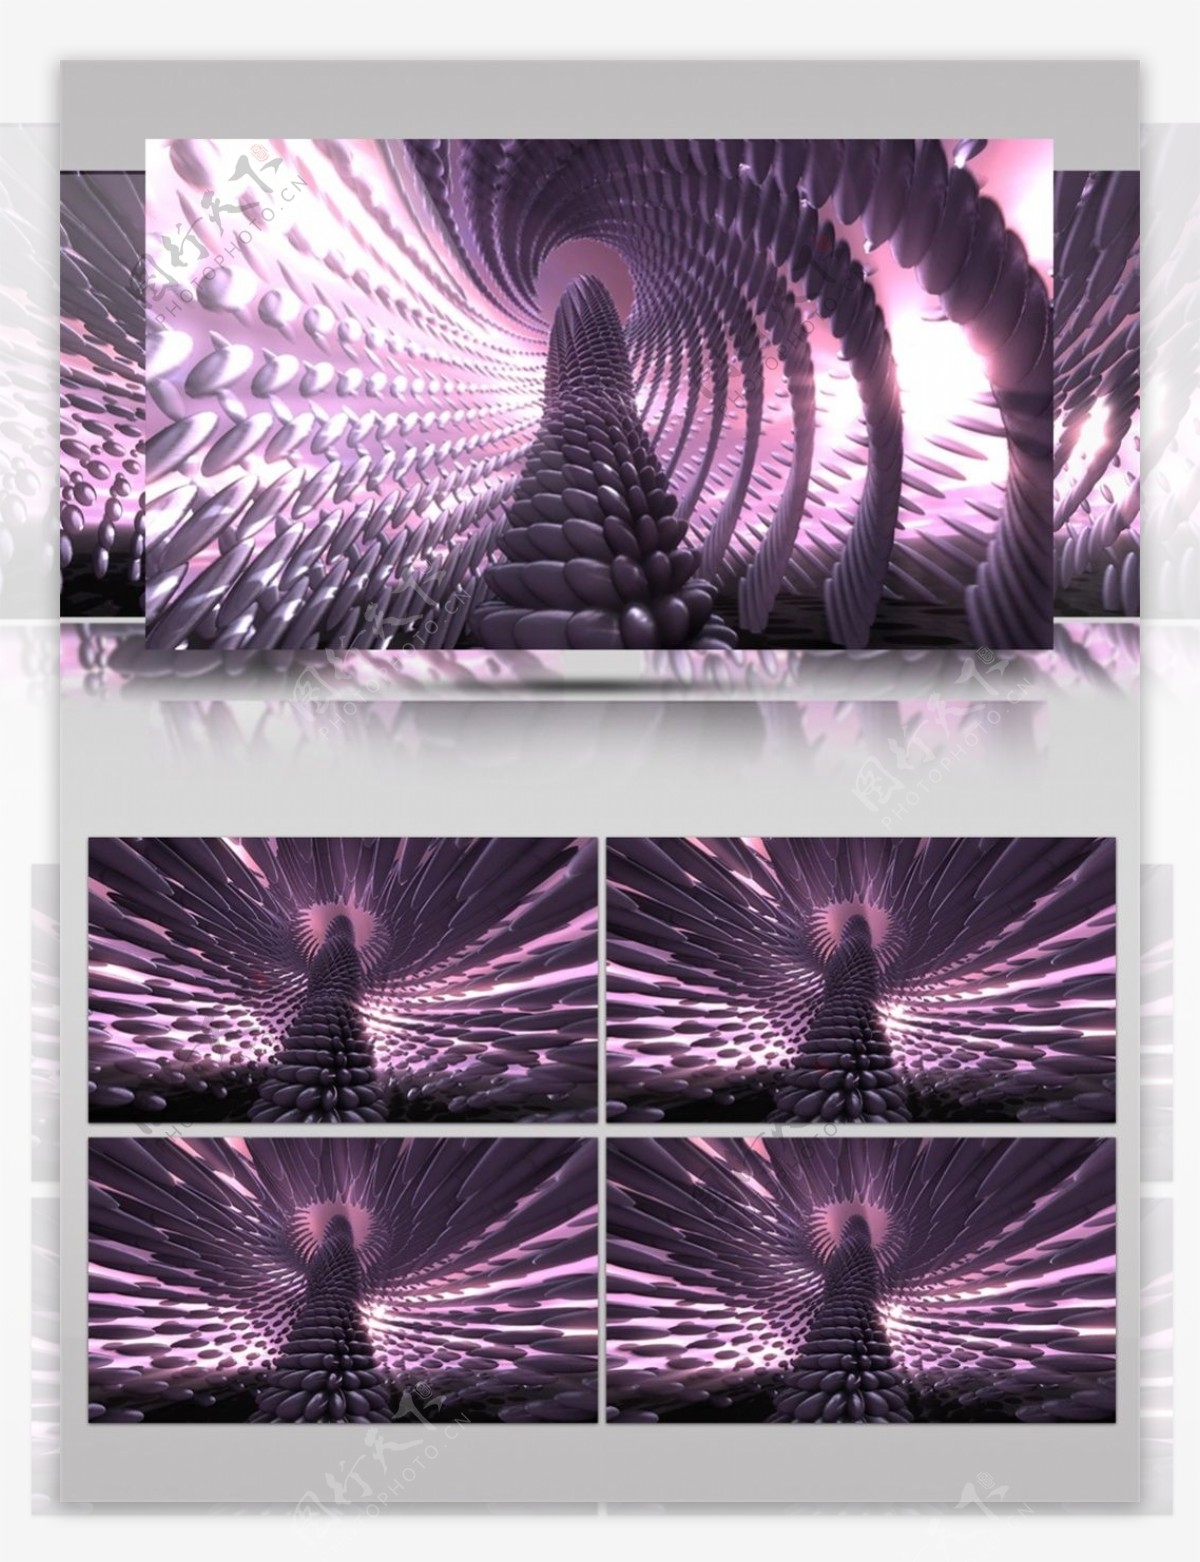 紫光螺旋灯塔动态视频素材